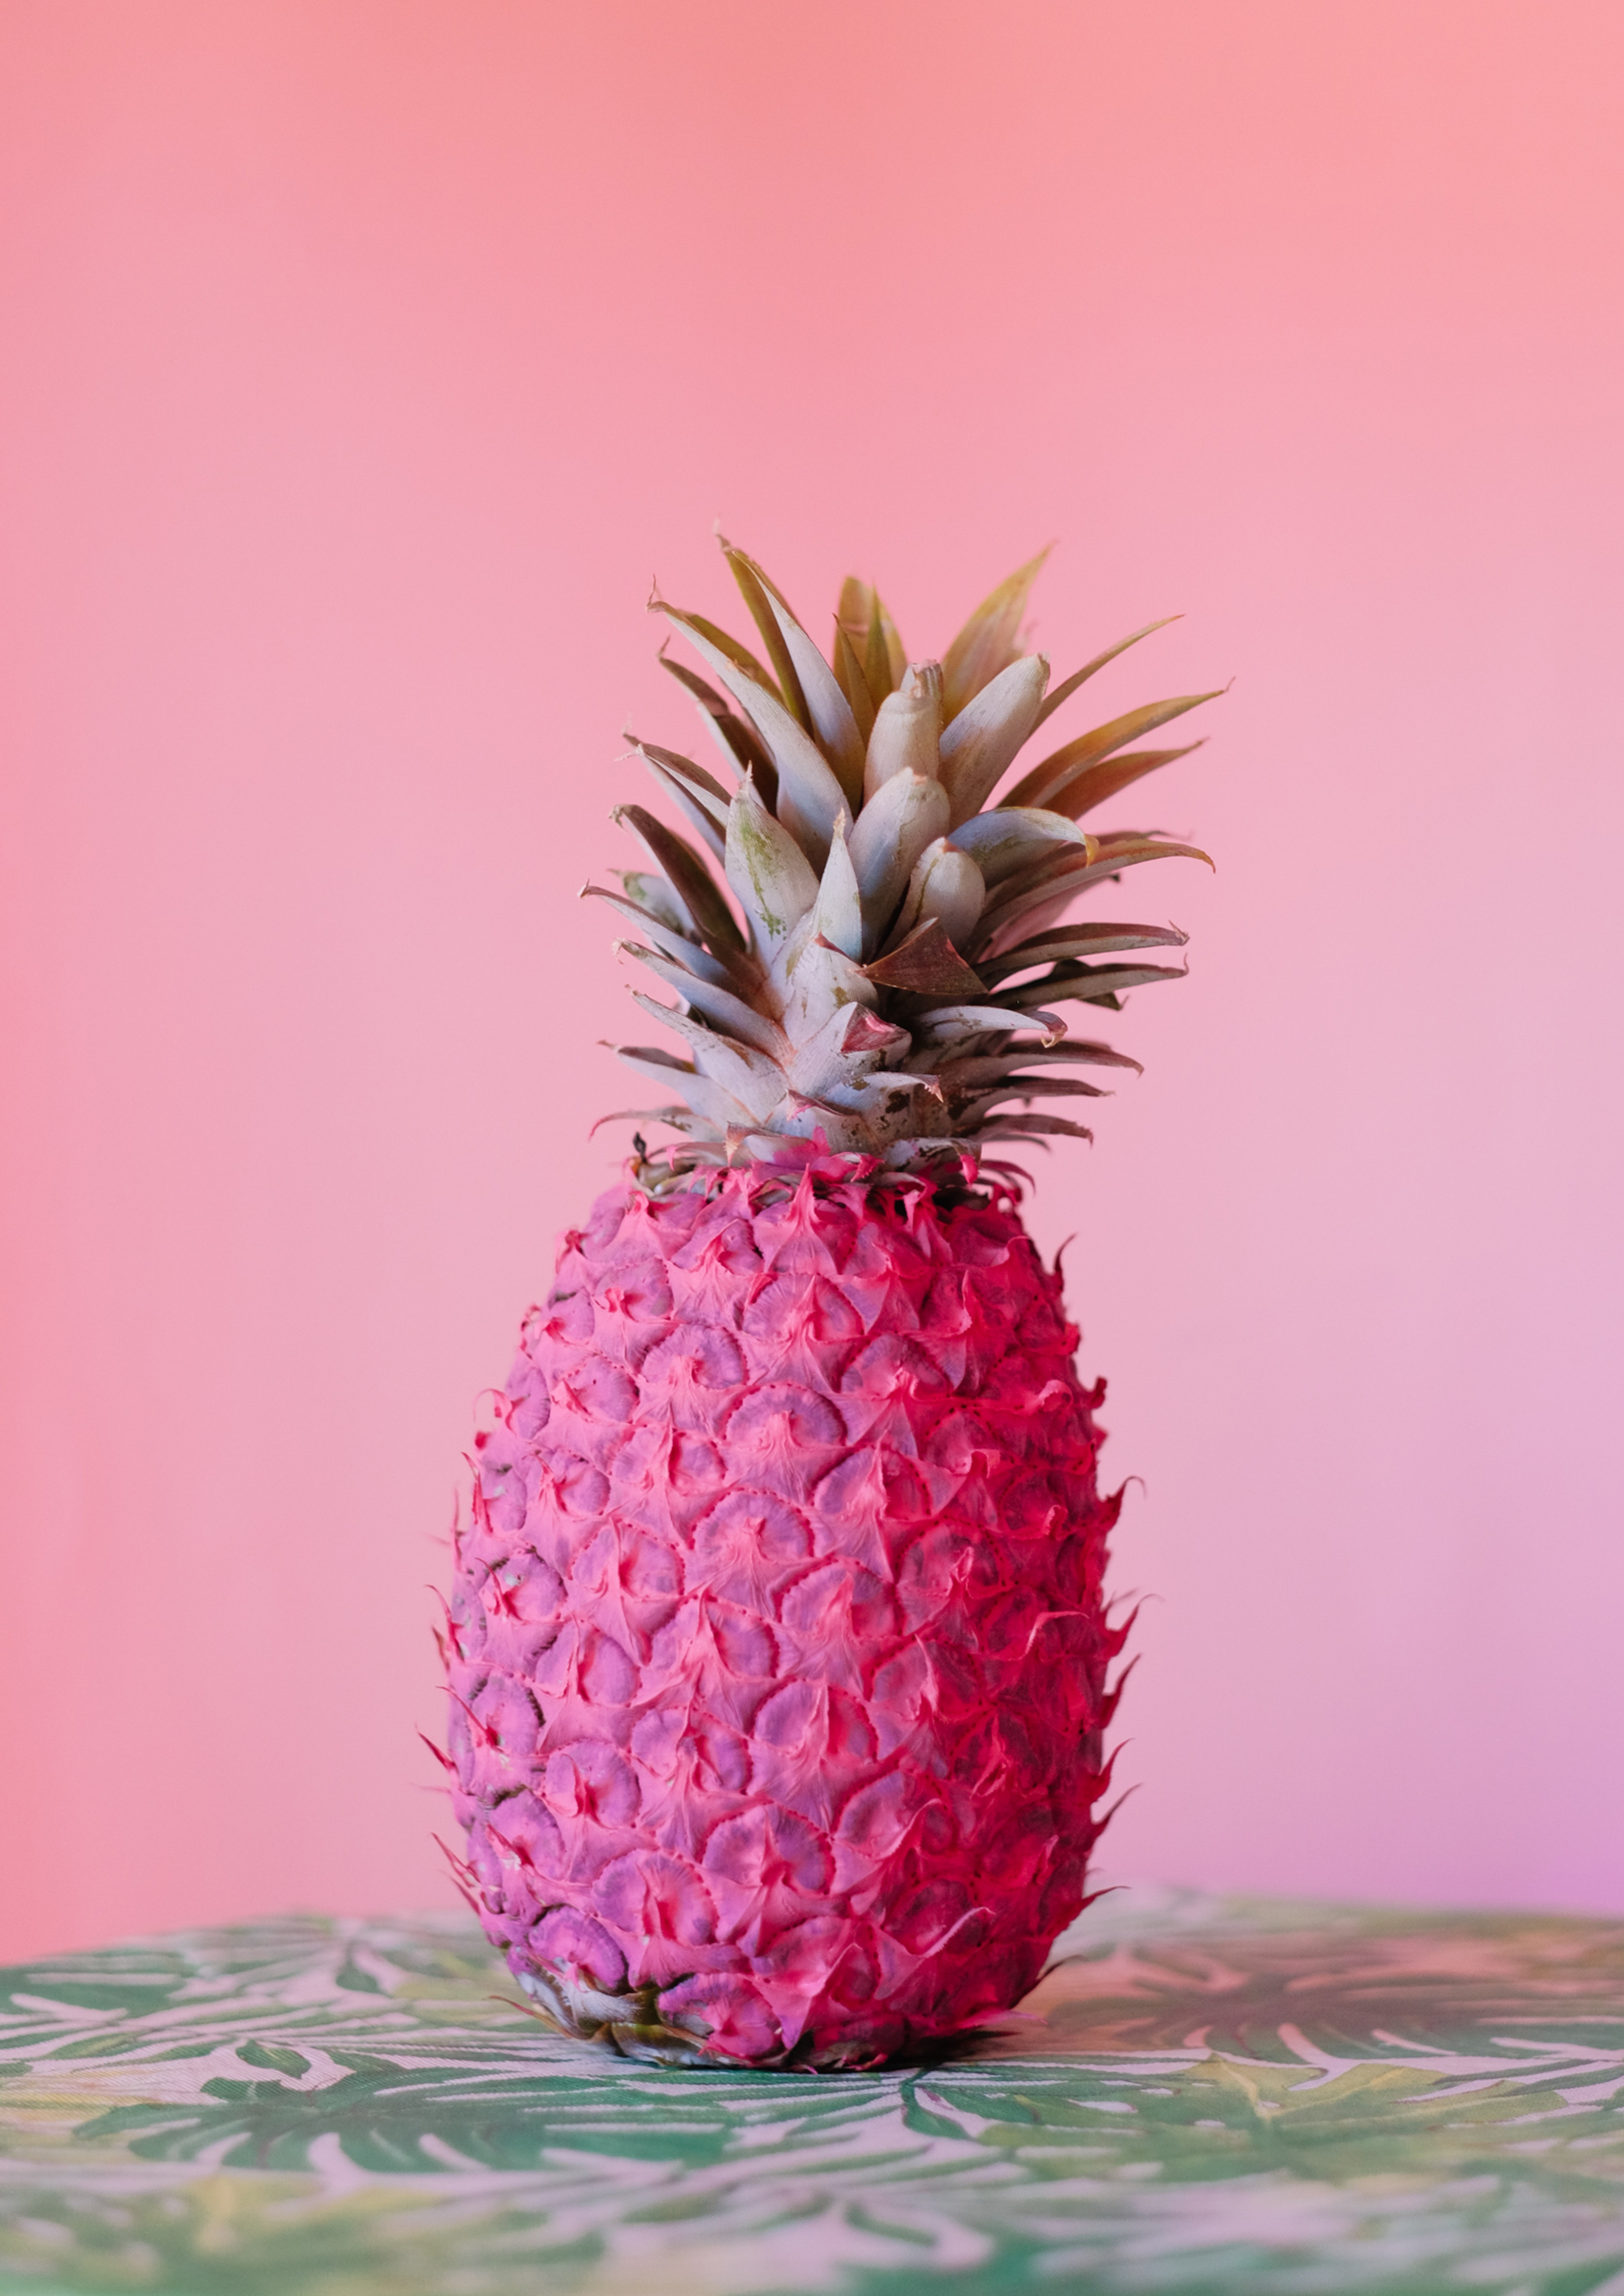 freetoedit pineapple pink yummy minimal image by @freetoedit.